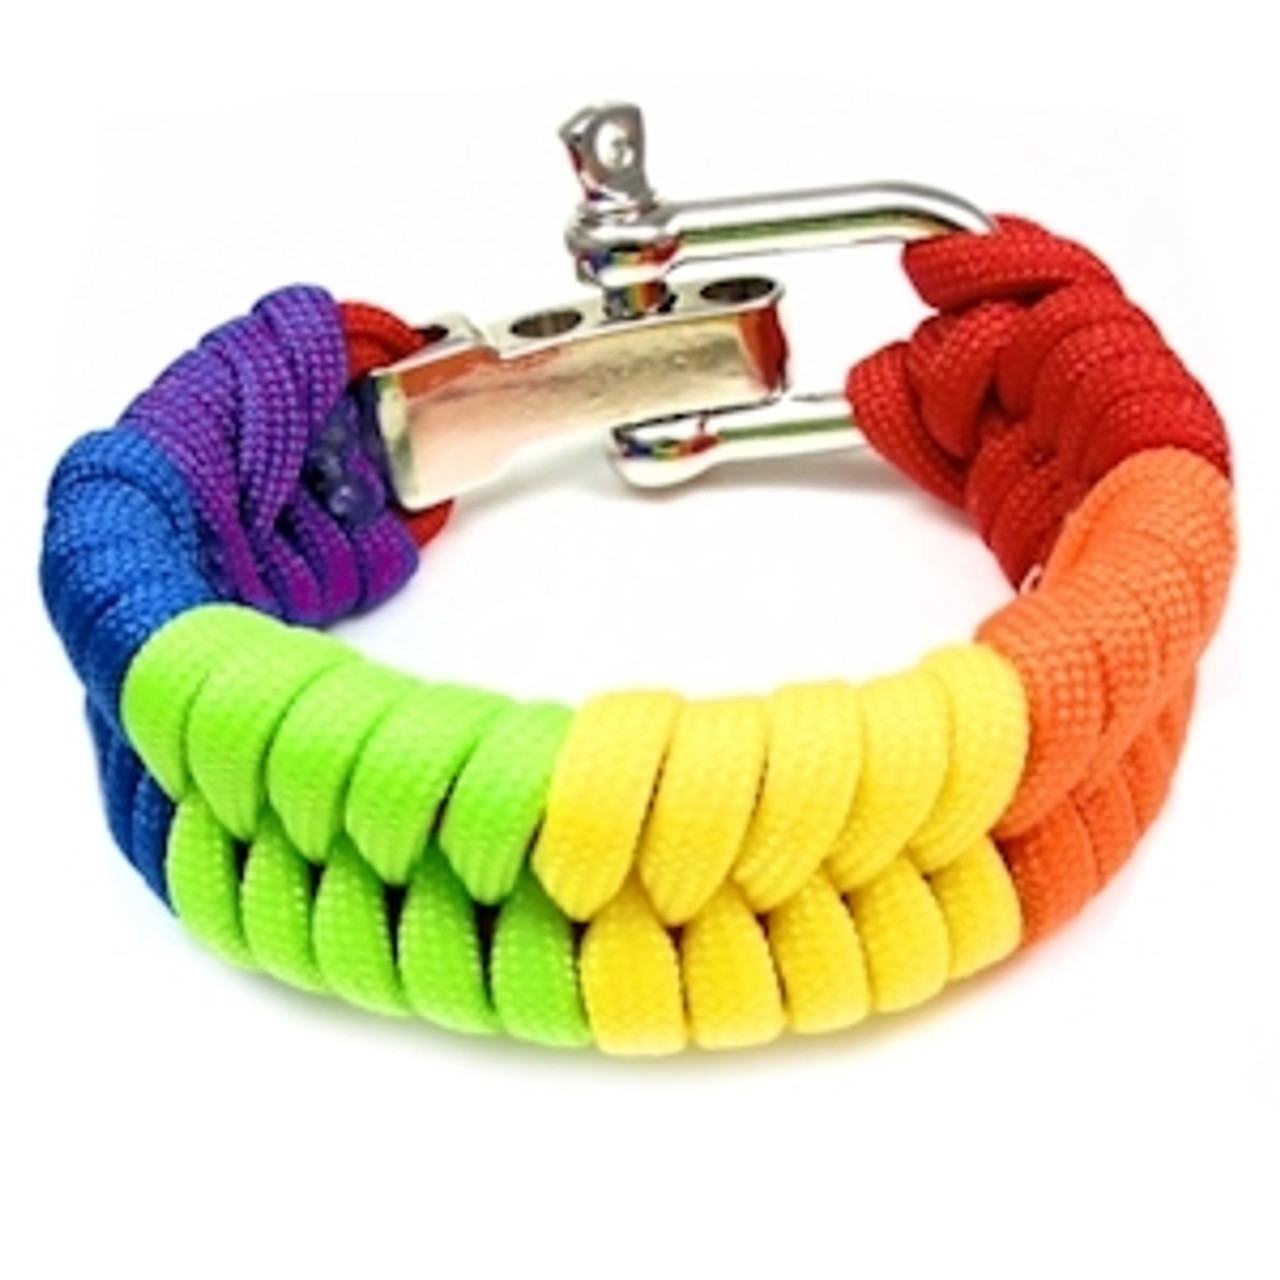 2 Color Paracord Buckle Bracelet-paracord Cross Style Bracelet 3D Unisex  Survival Wristband-woven Jewelry With Buckle-550 Paracord Bracelet - Etsy